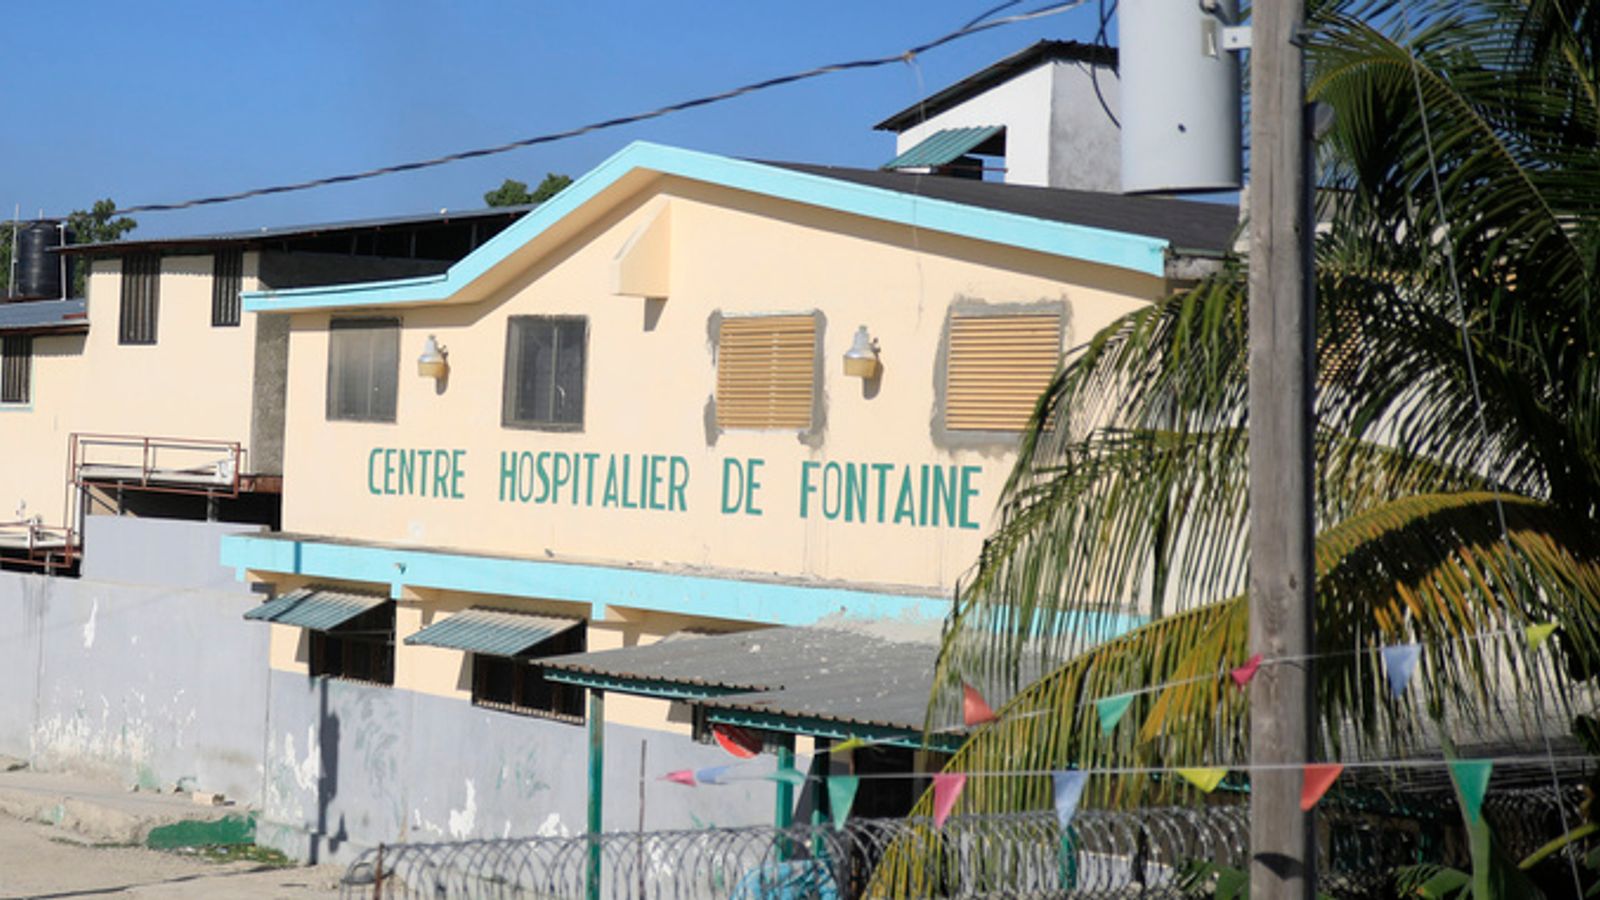 Хаитянските банди са стана по силен след убийството през 2021 г